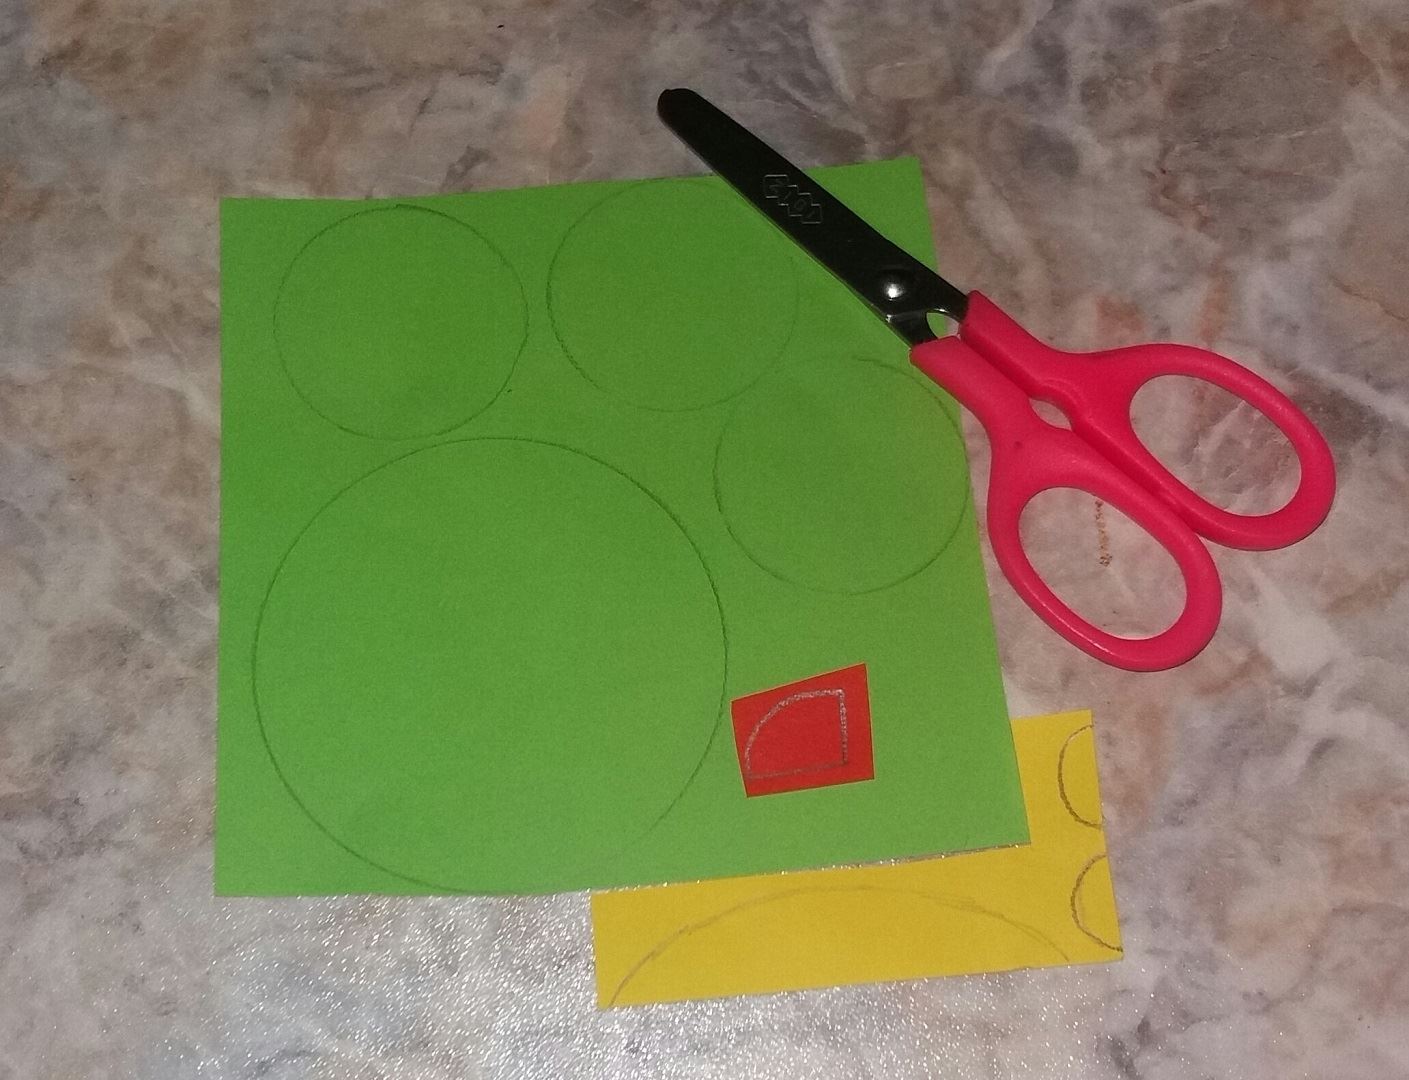 Для начала берем зеленую бумагу и вырезаем 1 большой и 3 меньших круга. Затем вырезаем длинный полуовал и 2 полукруга желтого цвета. Ну и в конце подготовки вырезаем красную детальку, как показано на фото.